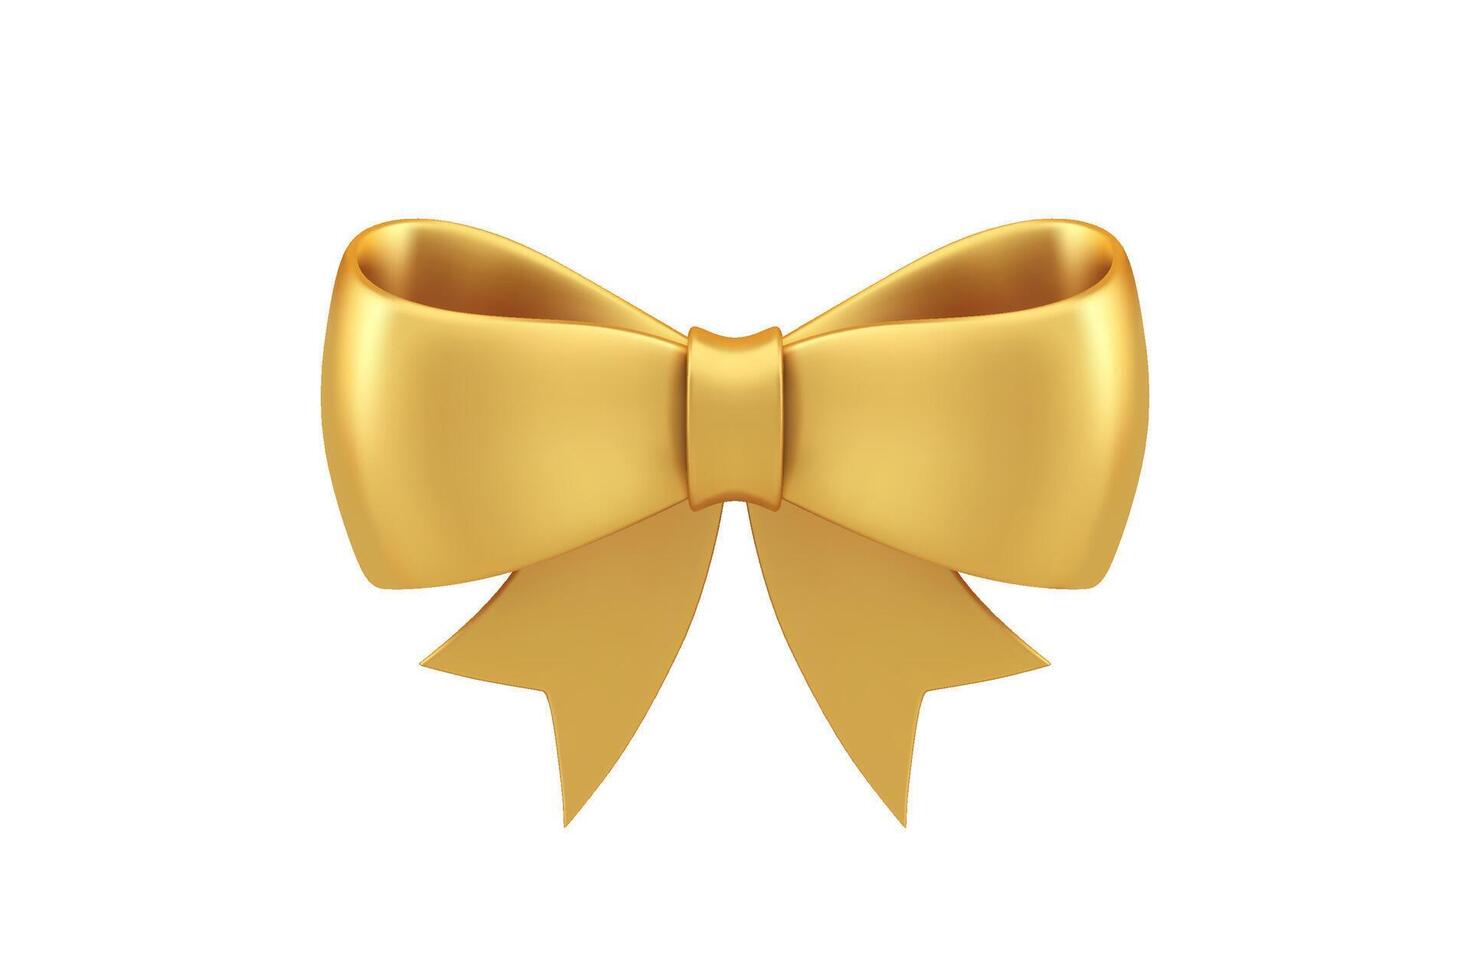 prima lustroso dorado arco cinta festivo elegante decoración realista 3d icono ilustración vector